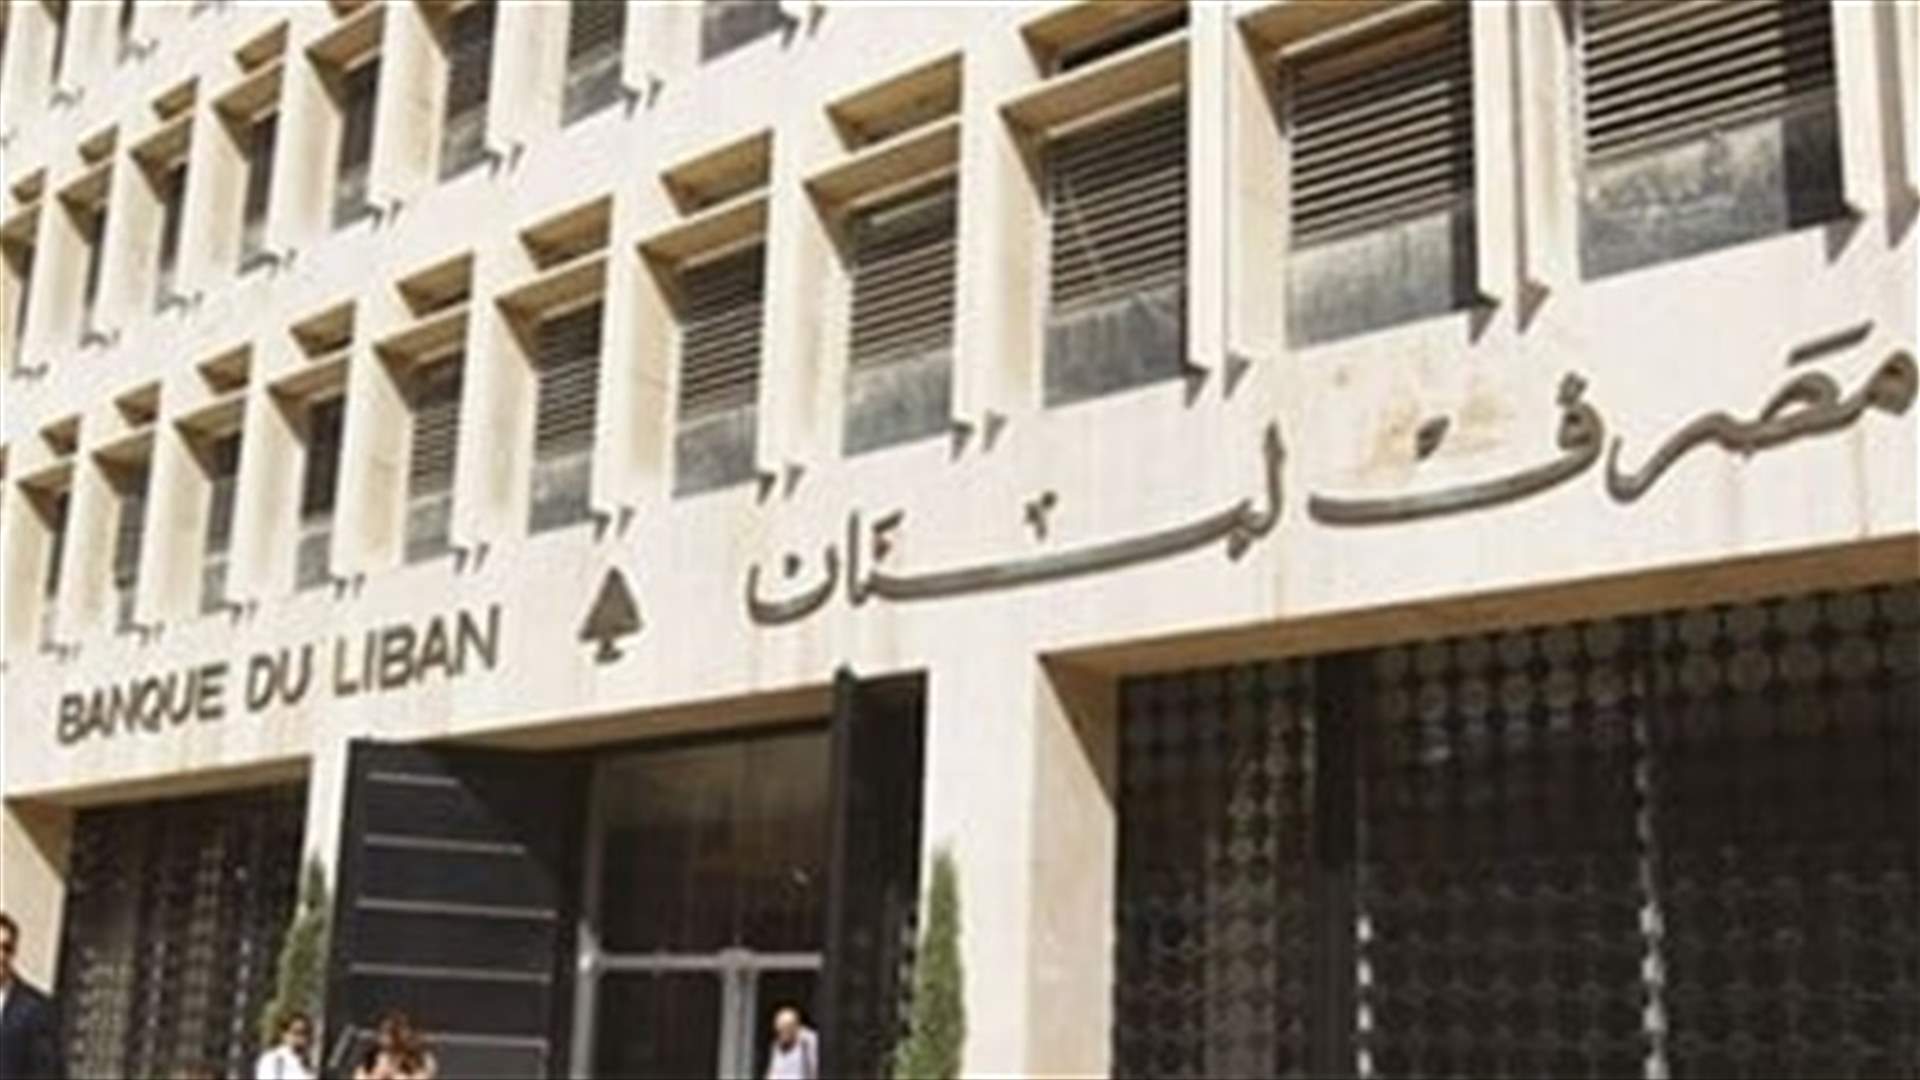 التأخير في وضع منصة مصرف لبنان موضع التنفيذ زاد من الضبابية (الشرق الاوسط)